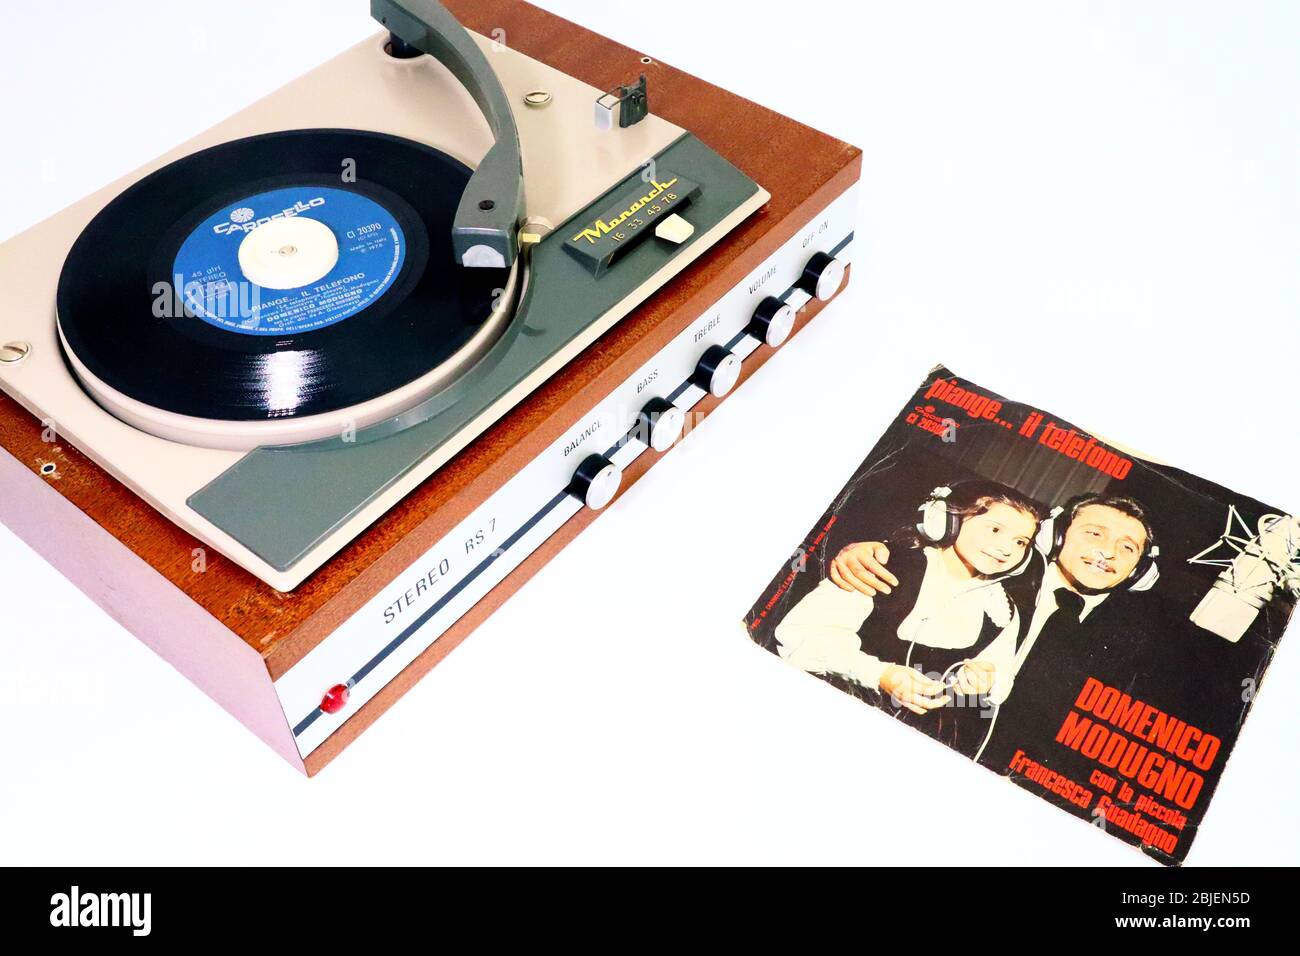 DOMENICO MODUGNO con FRANCESCA GUADAGNO, Piange... il telefono, 1975  etichetta Vinyl Record CAROSELLO/RICORDI su 1966 MONARCH Record Player Foto  stock - Alamy